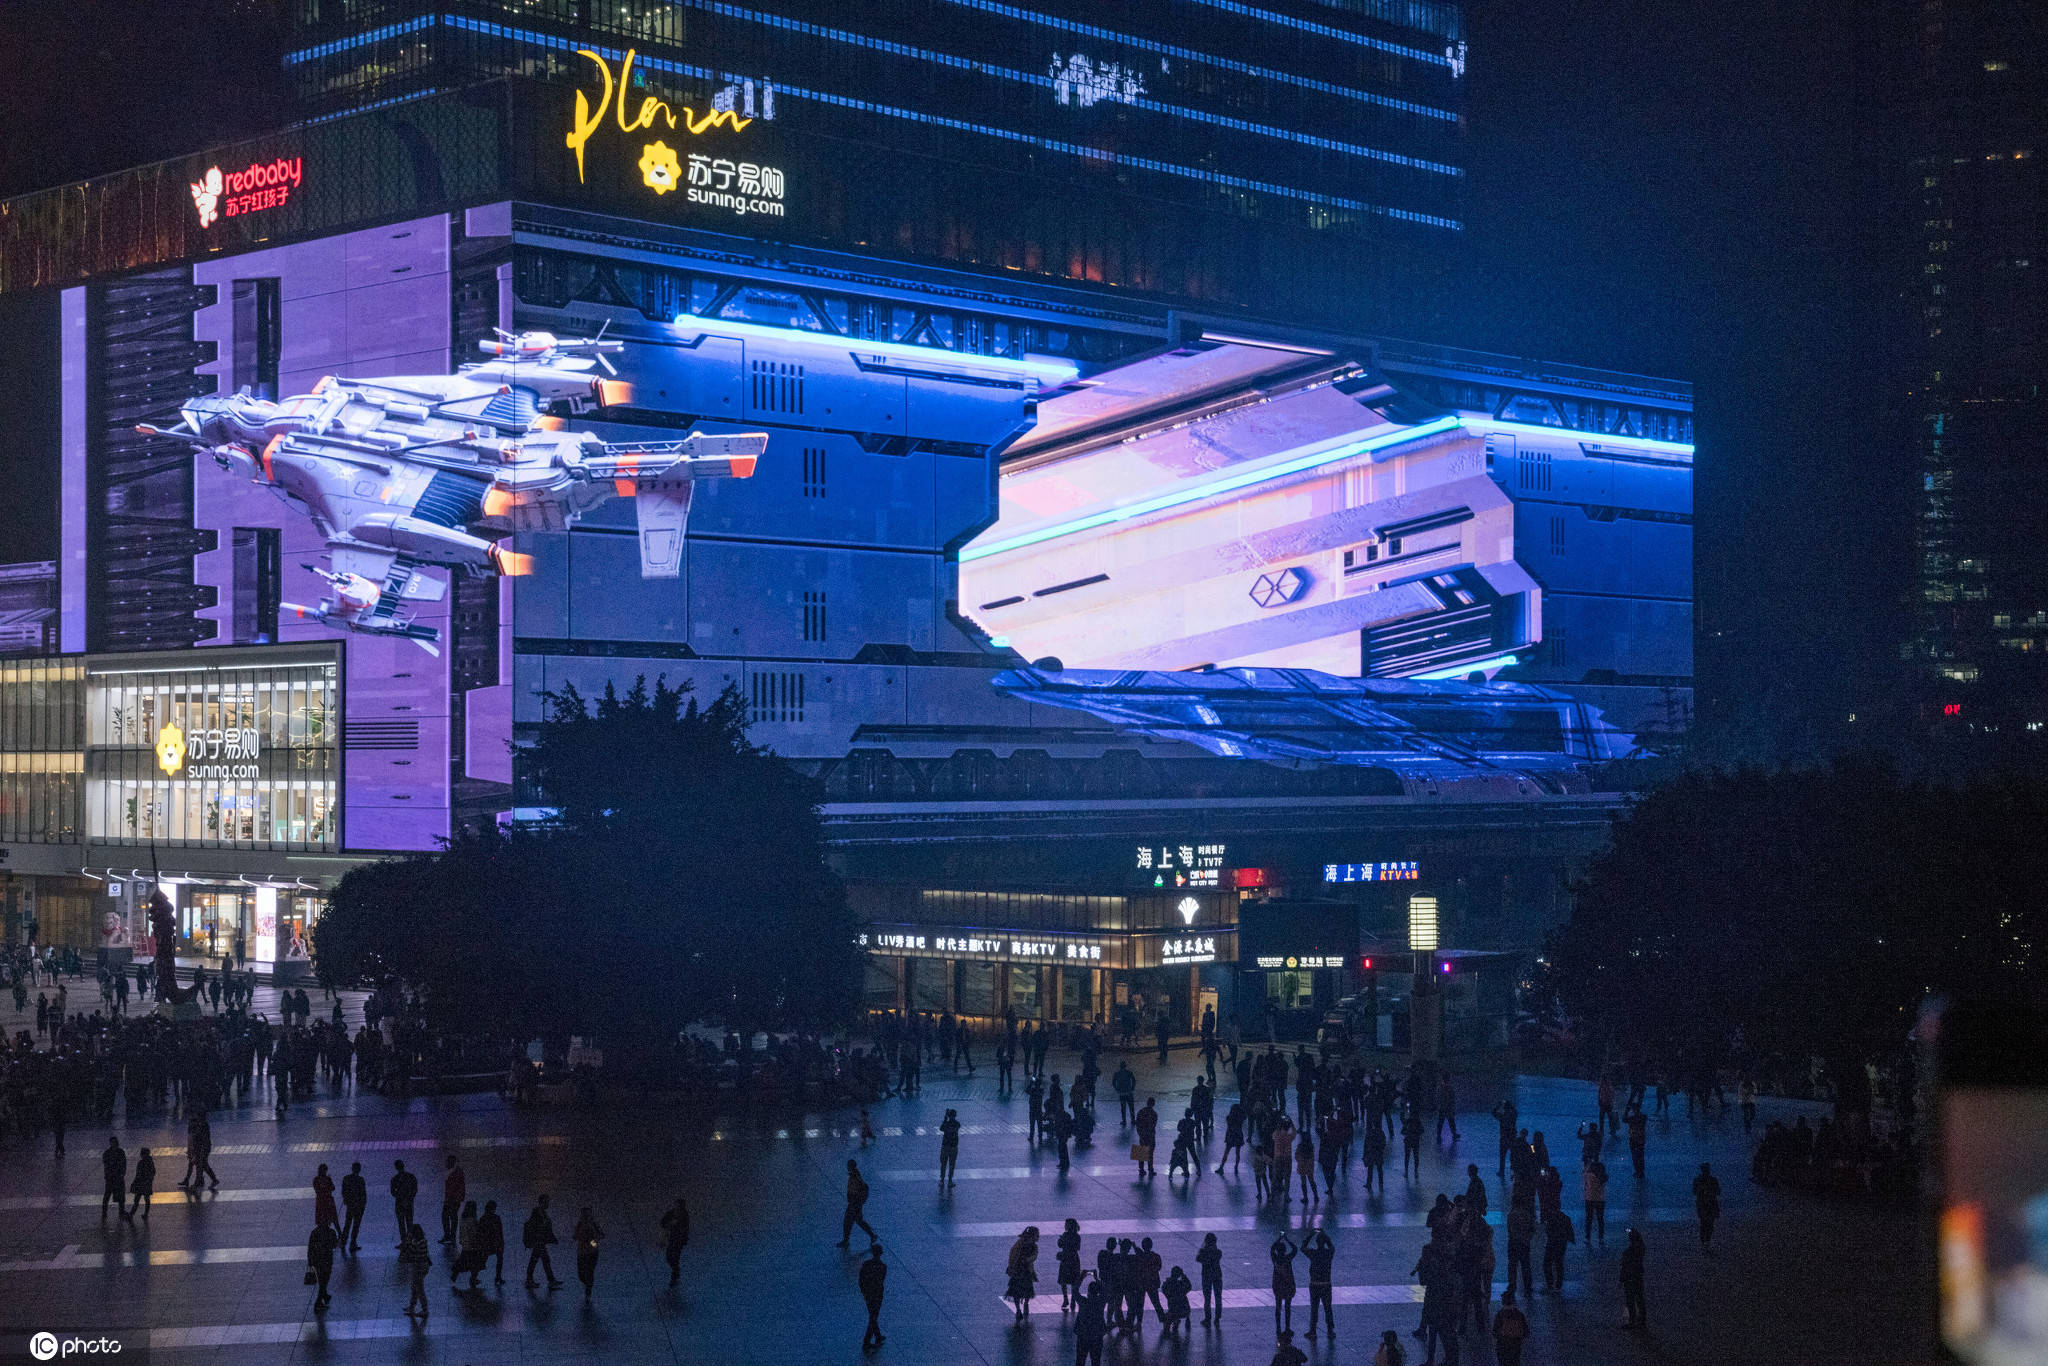 未来已来!重庆一商圈现超酷炫裸眼3d"太空飞船"